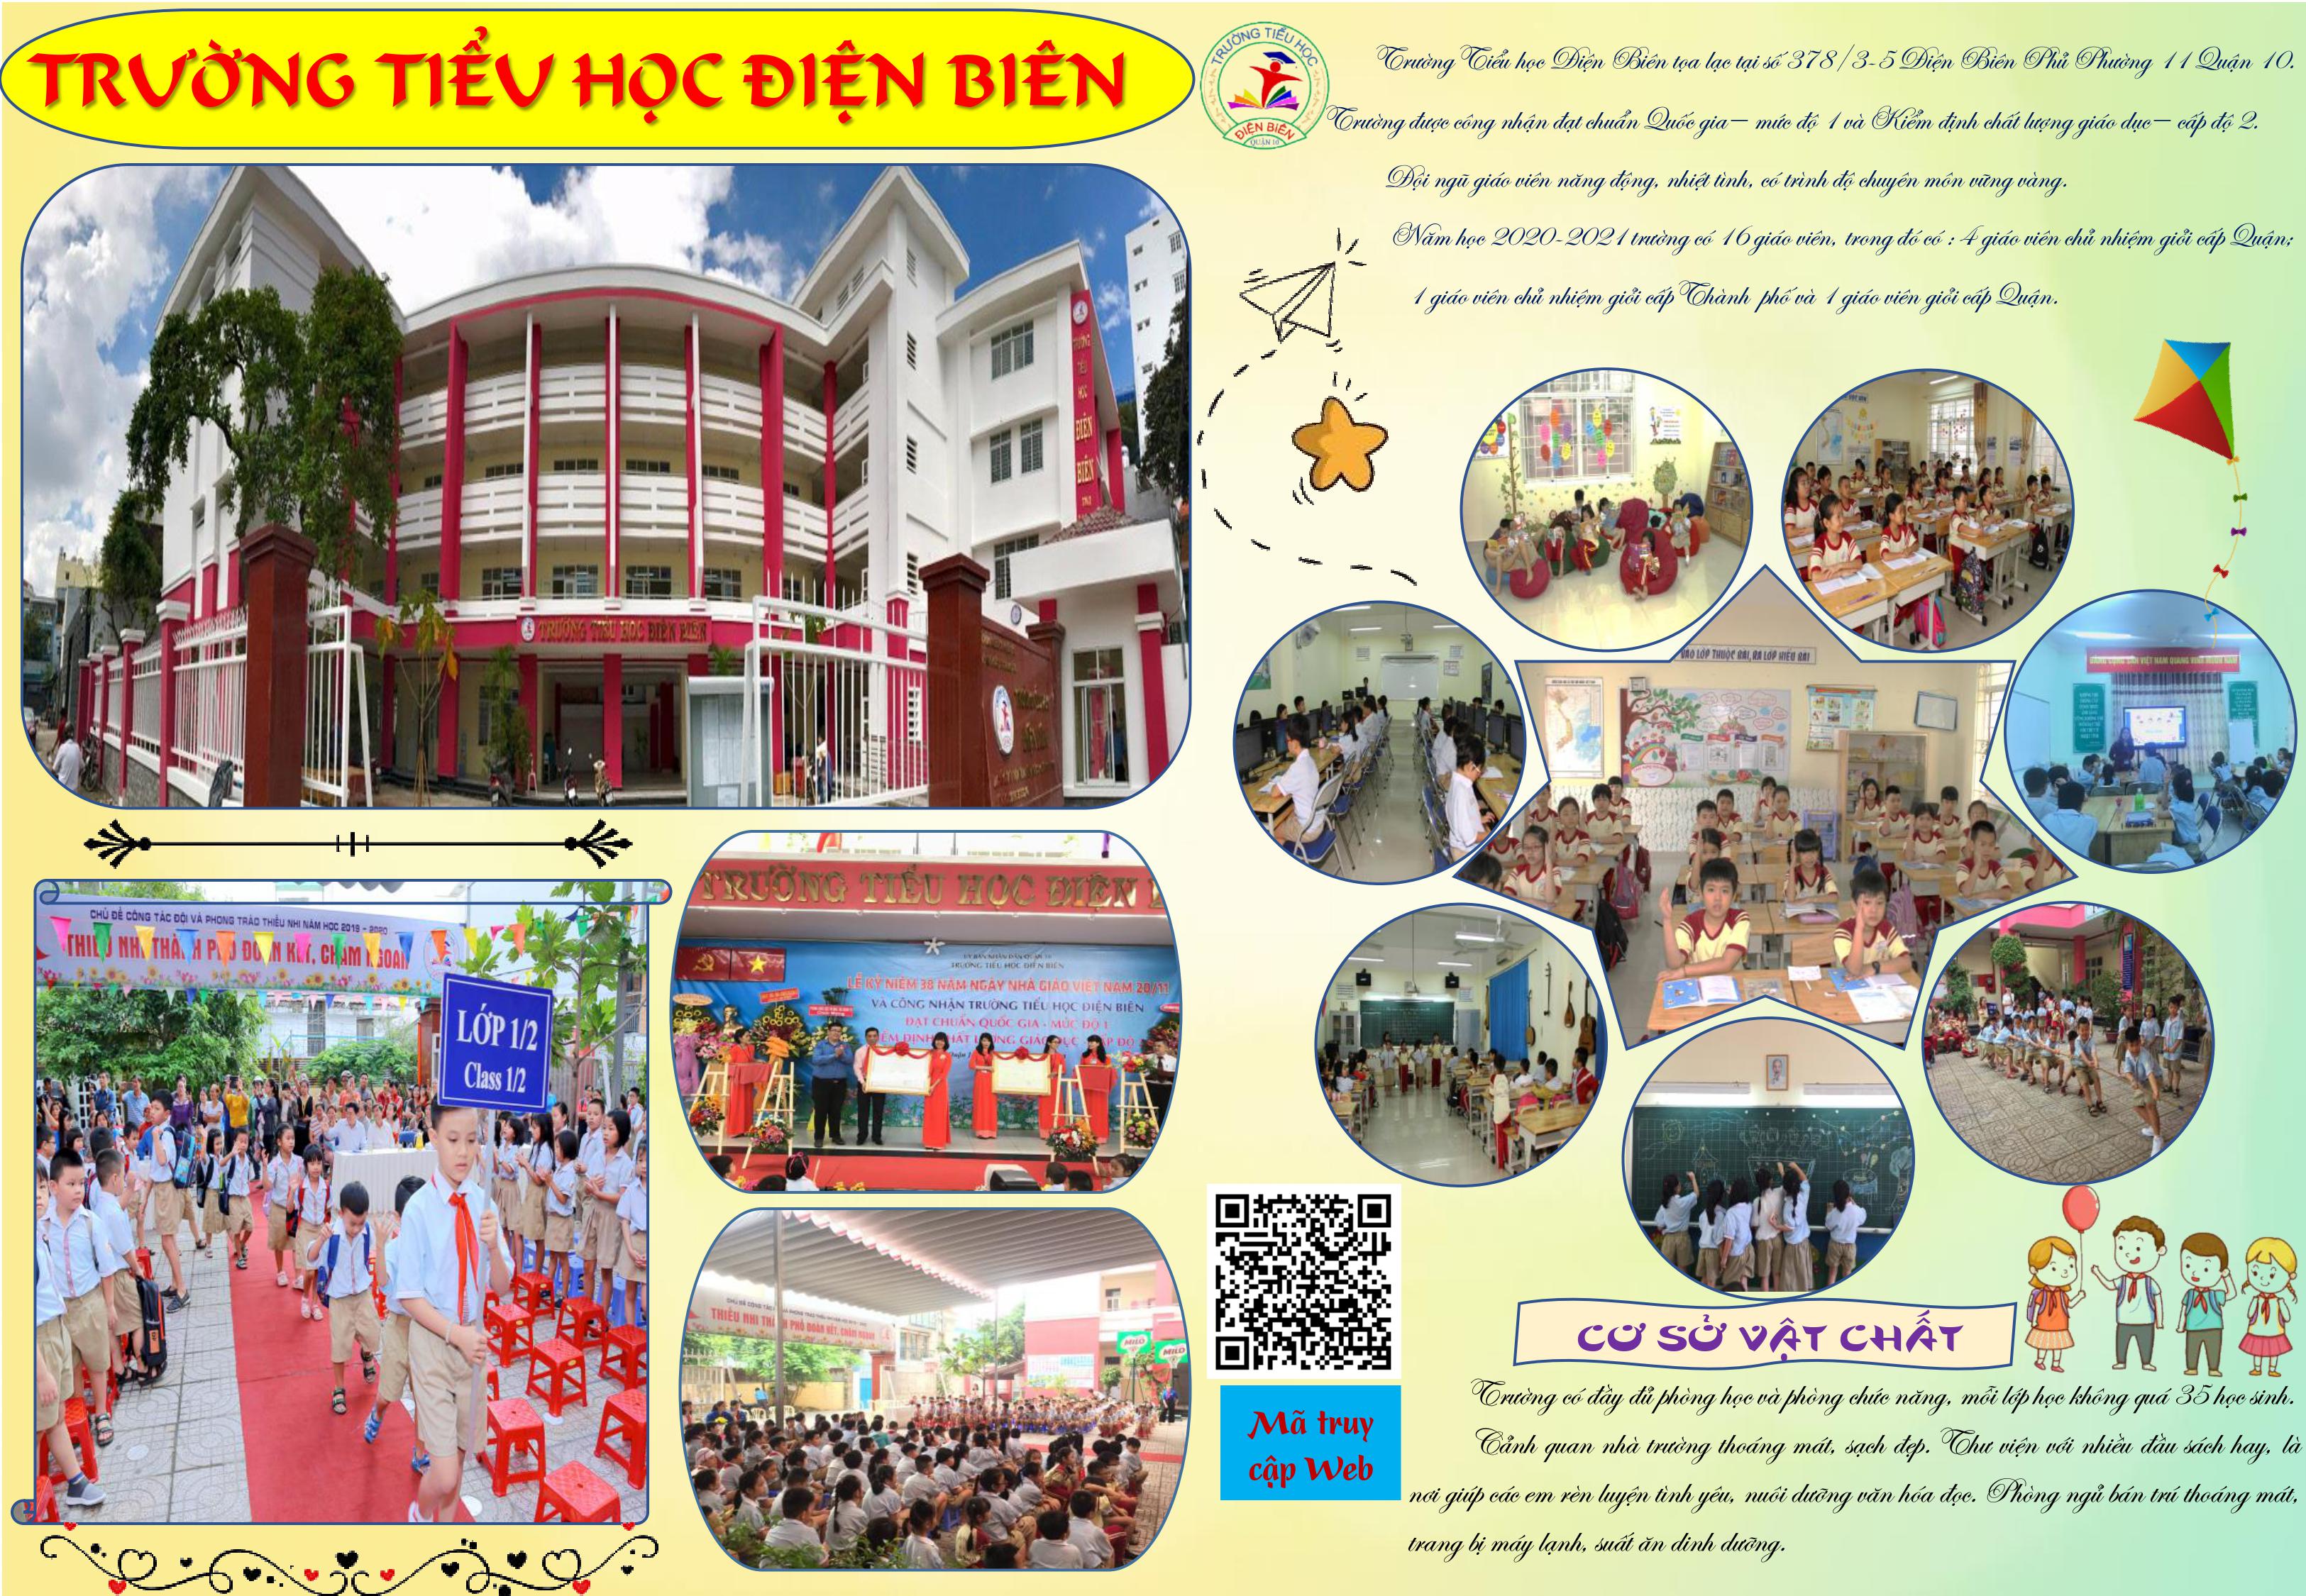 Image: Thông báo của Trường tiểu học Điện Biên ngày 21 tháng 6 năm 2021